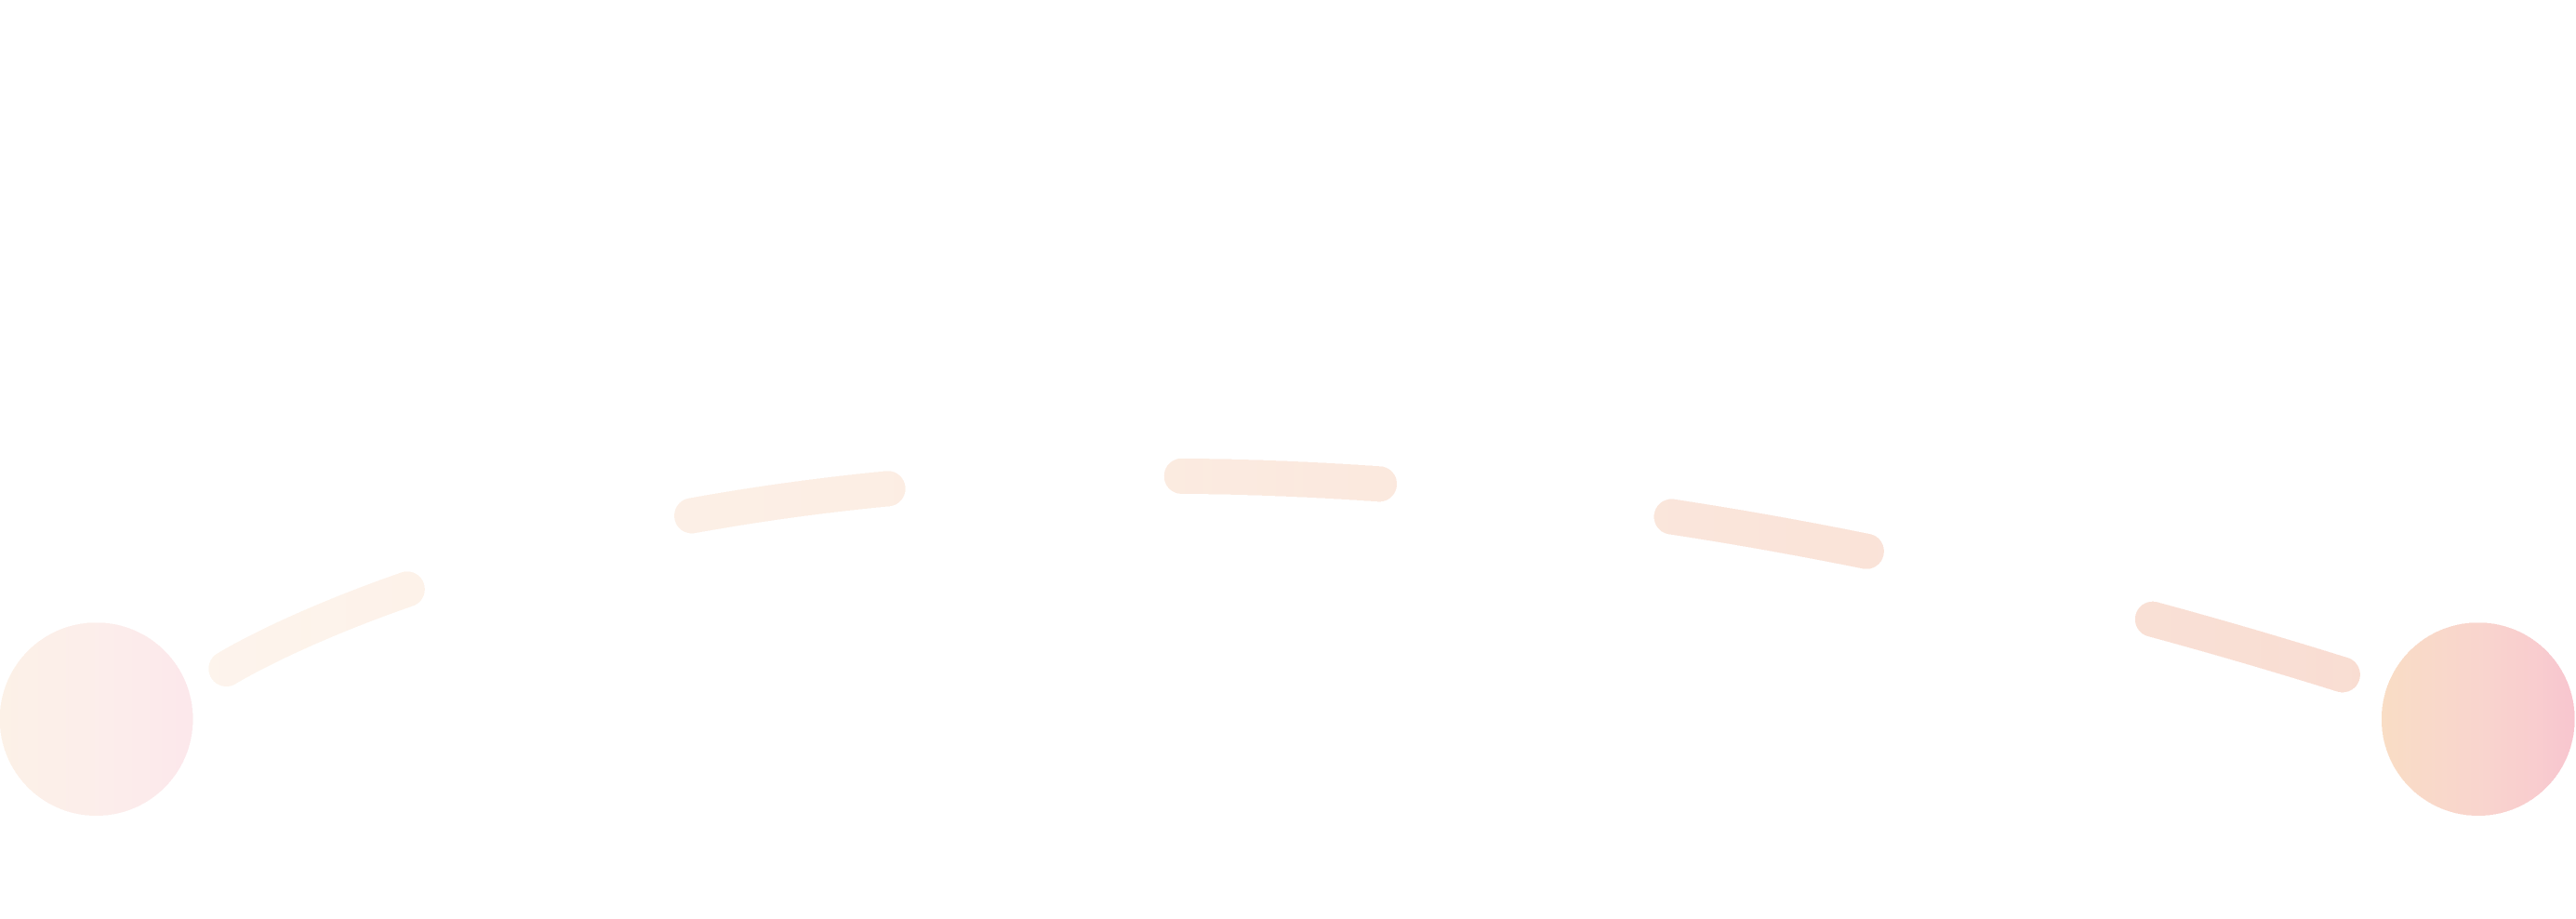 Ligne orange représentant la première étape du processus de candidature.